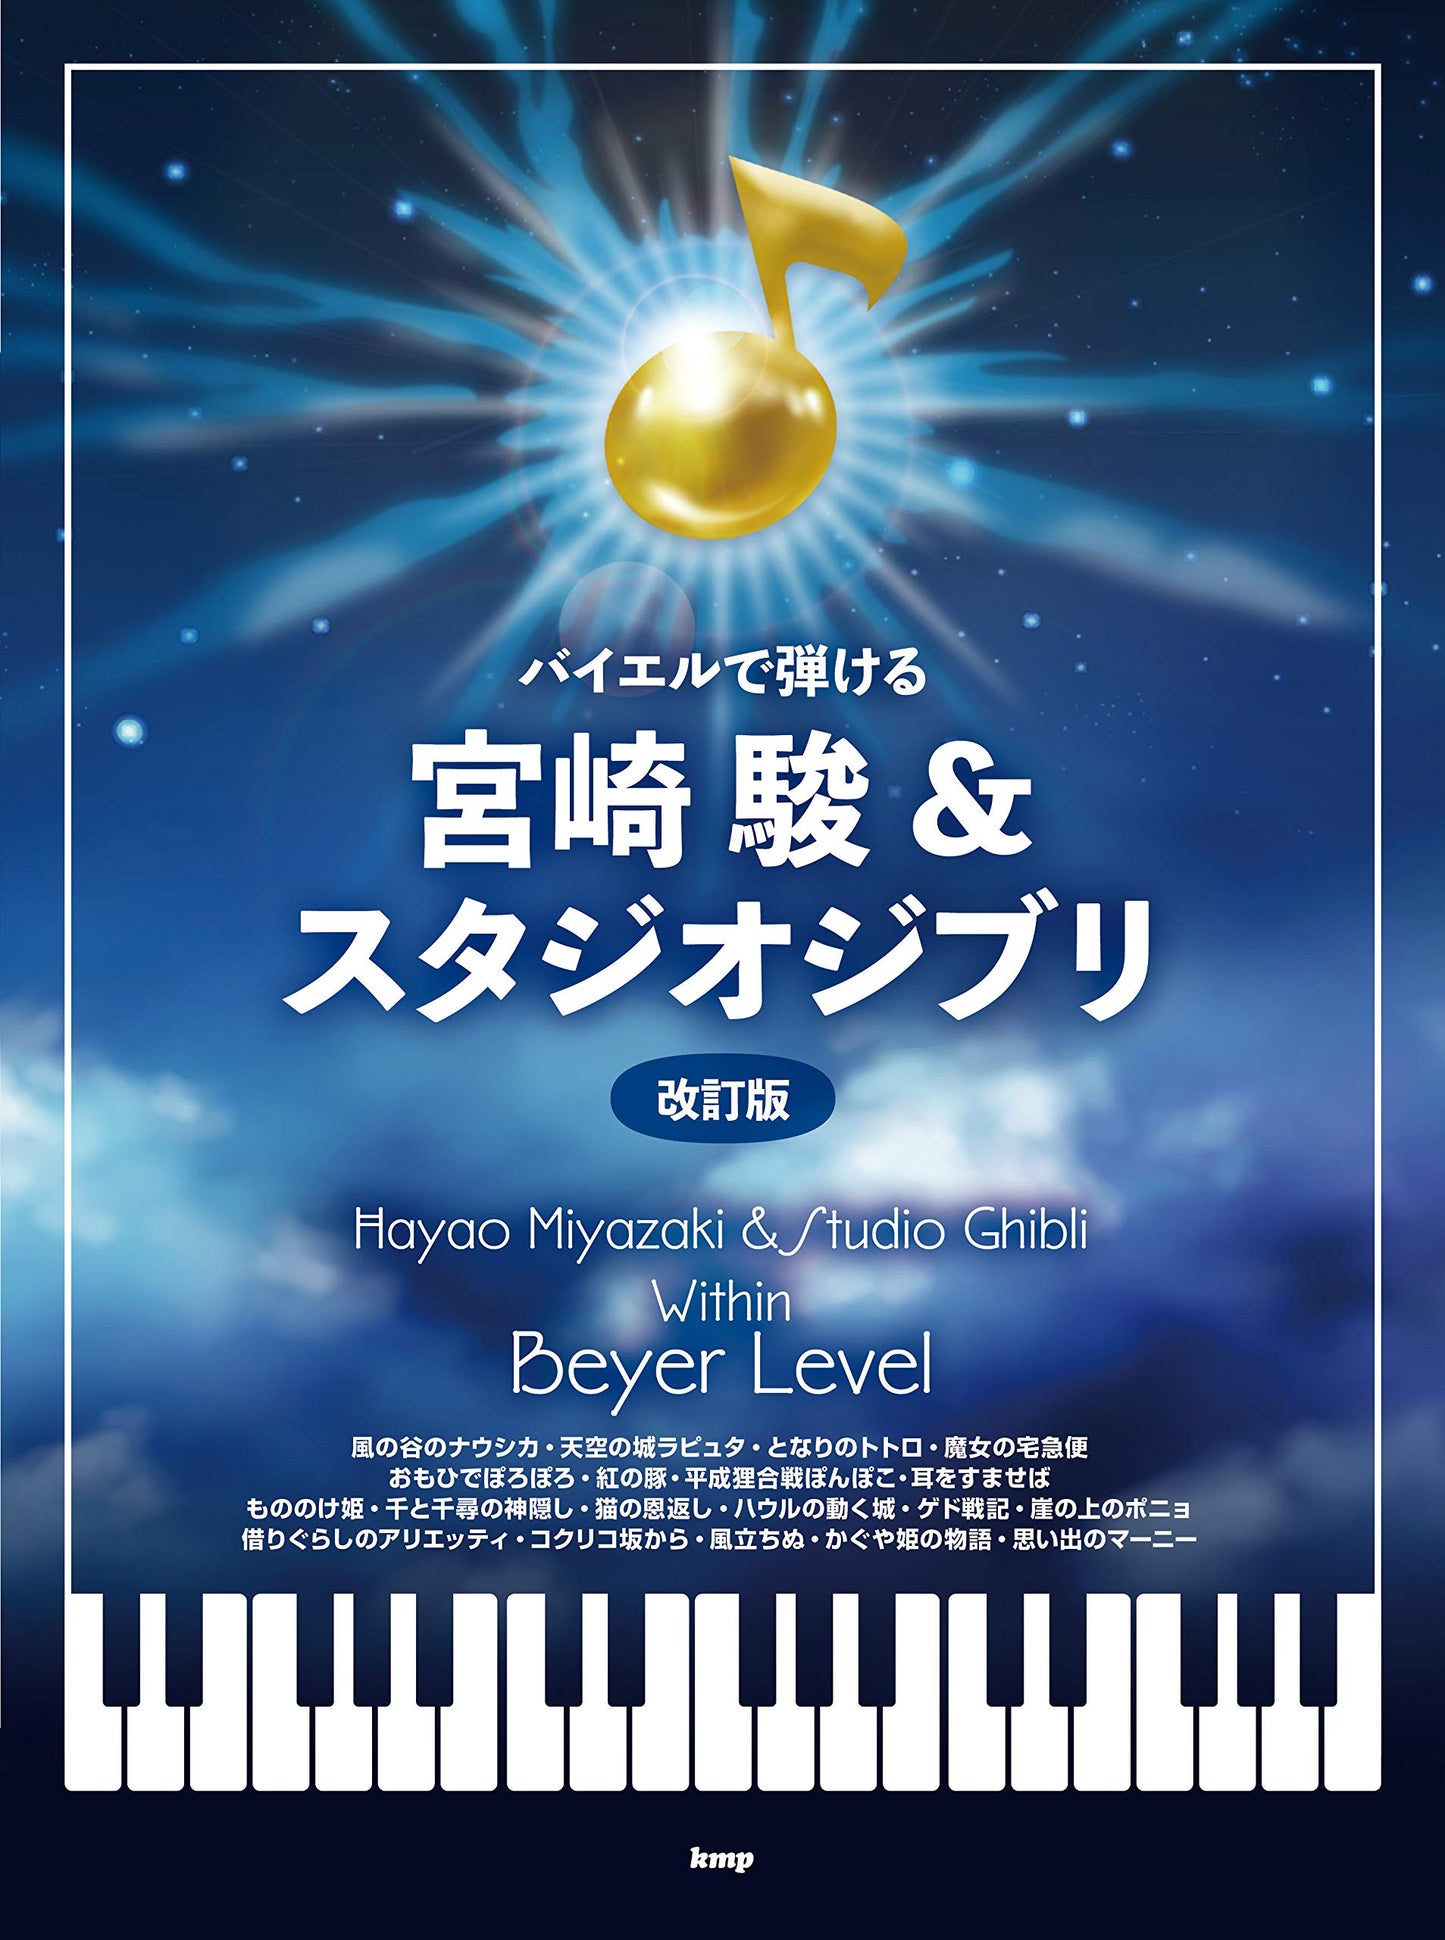 Hayao Miyazaki and Studio Ghibli within Beyer Level for Piano Solo